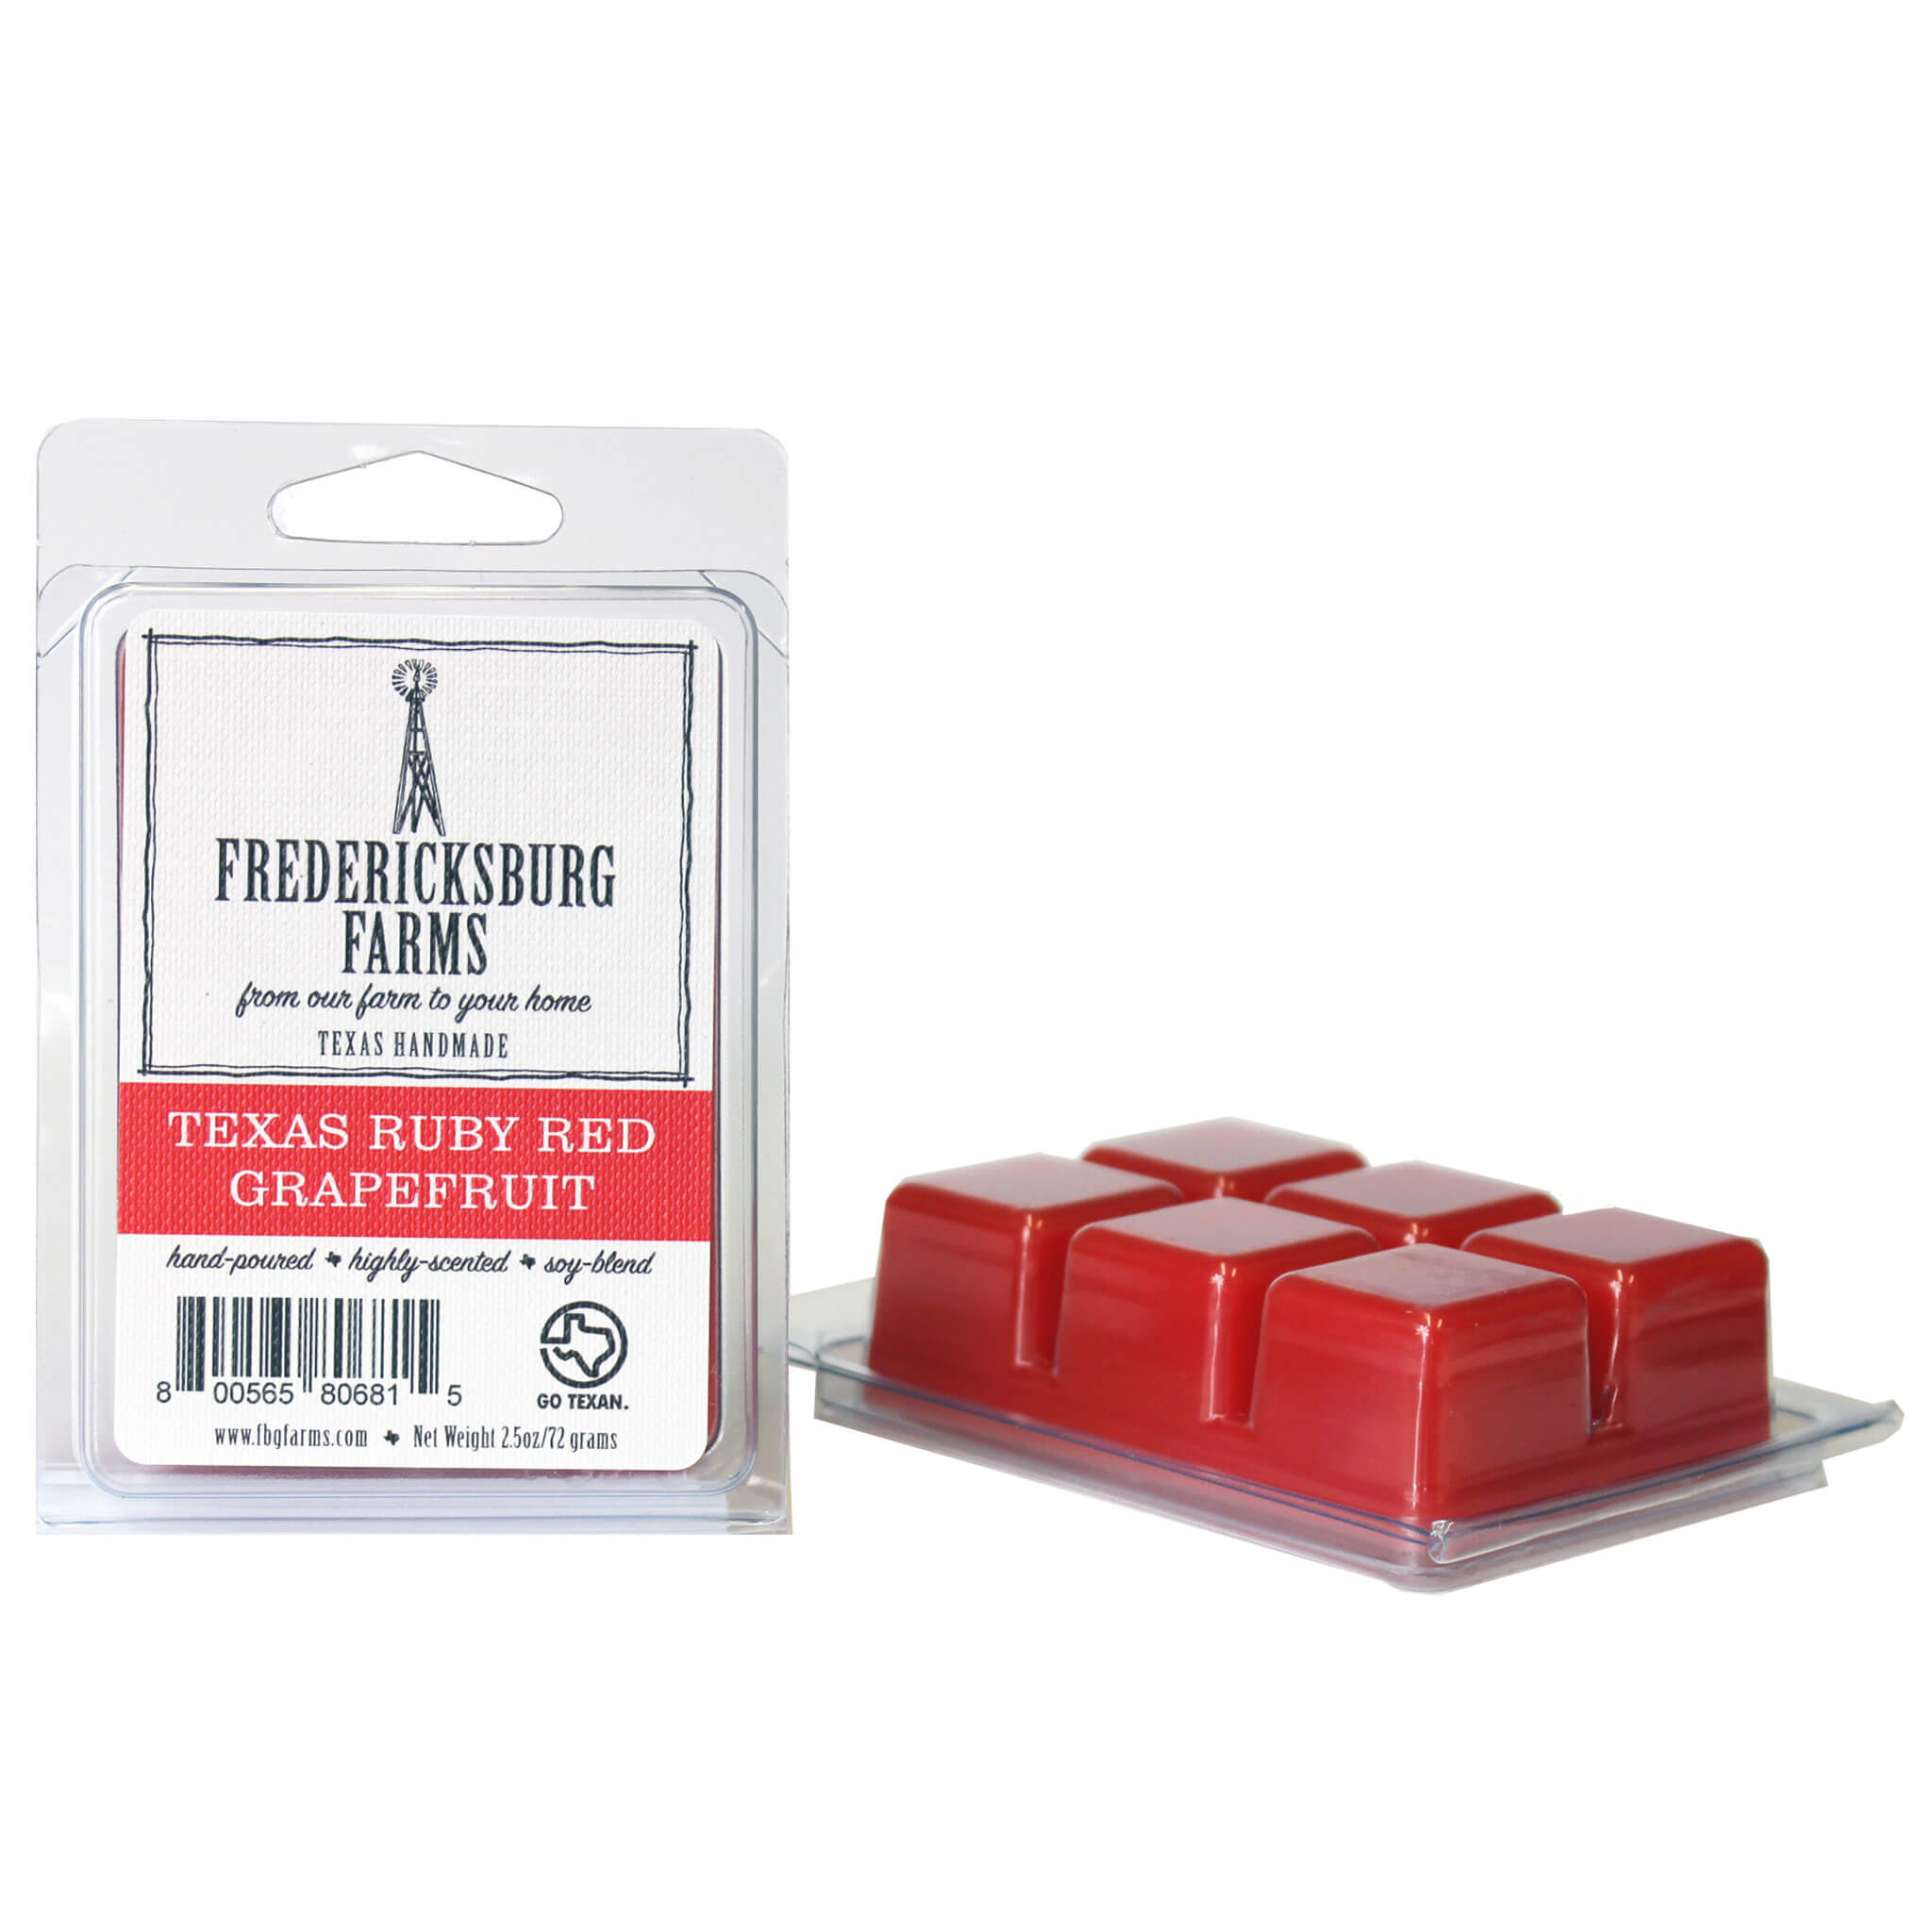 Red Raspberry Wax Melts 6-Packs - Wax Melts 6-Packs